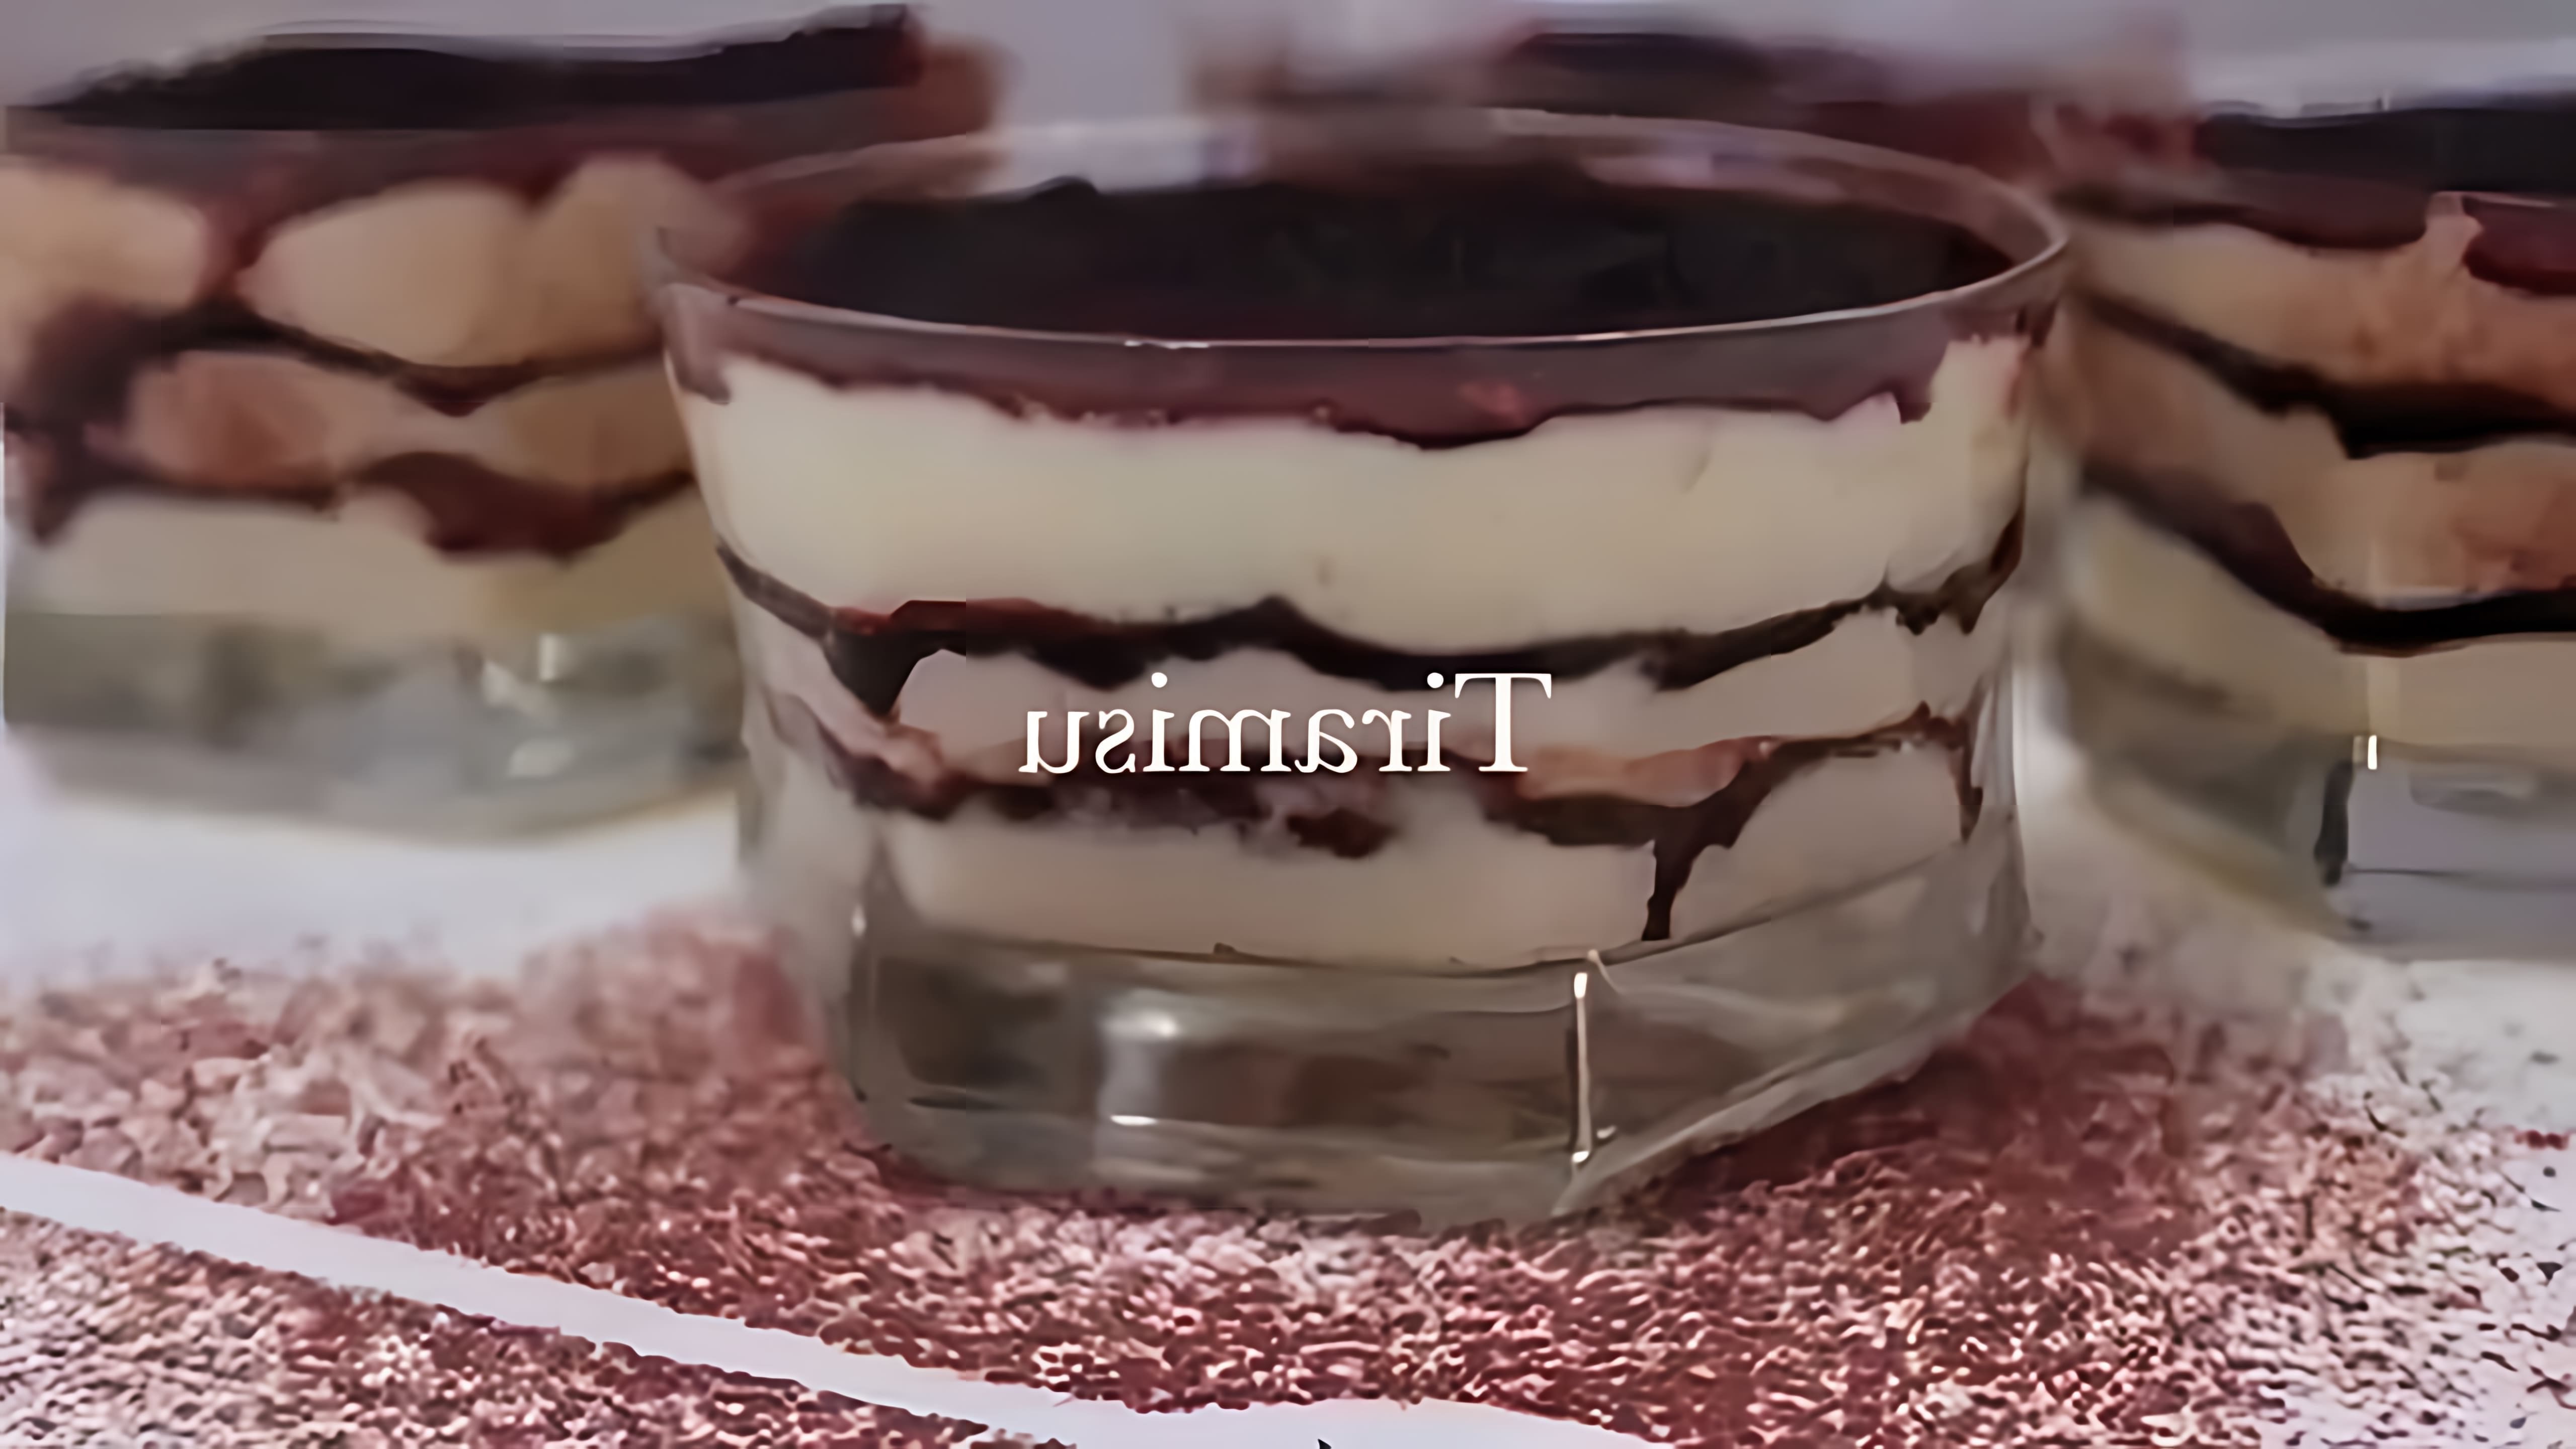 В этом видео-ролике будет представлен классический рецепт тирамису, который является одним из самых популярных итальянских десертов